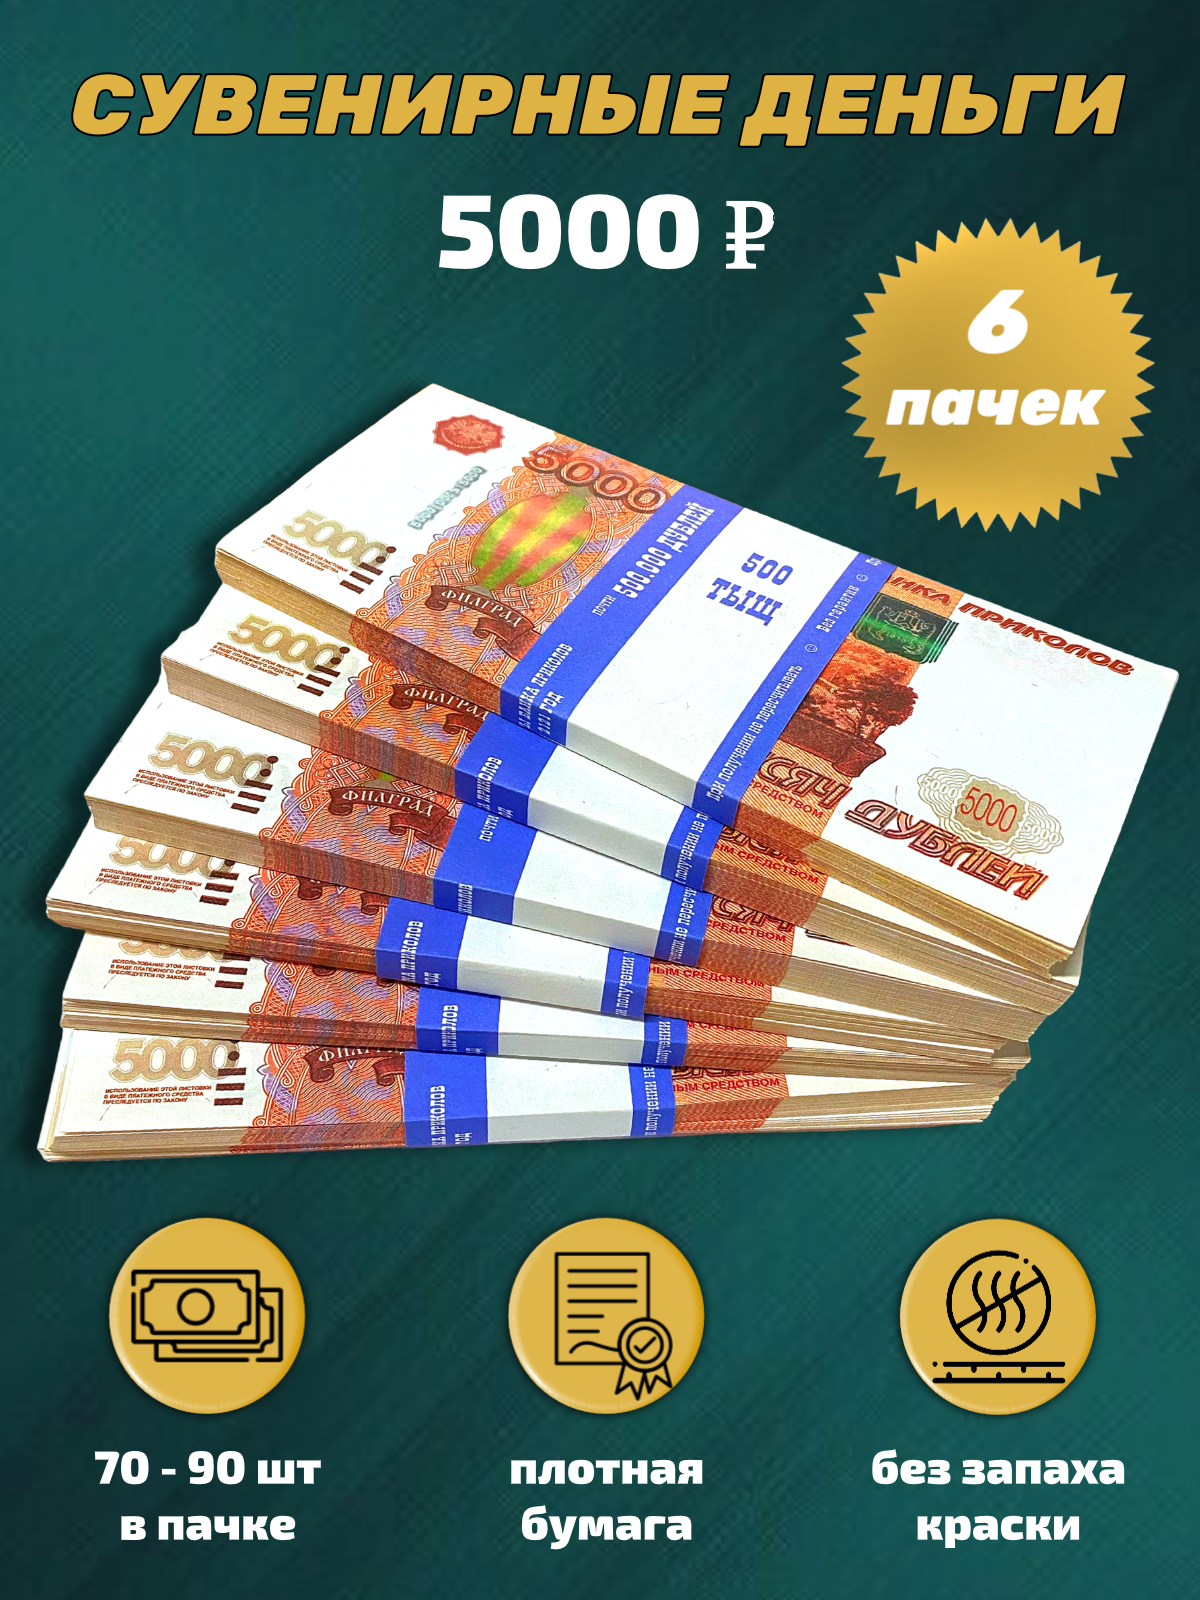 Сувенирные деньги, набор 5000 руб - 6 пачек